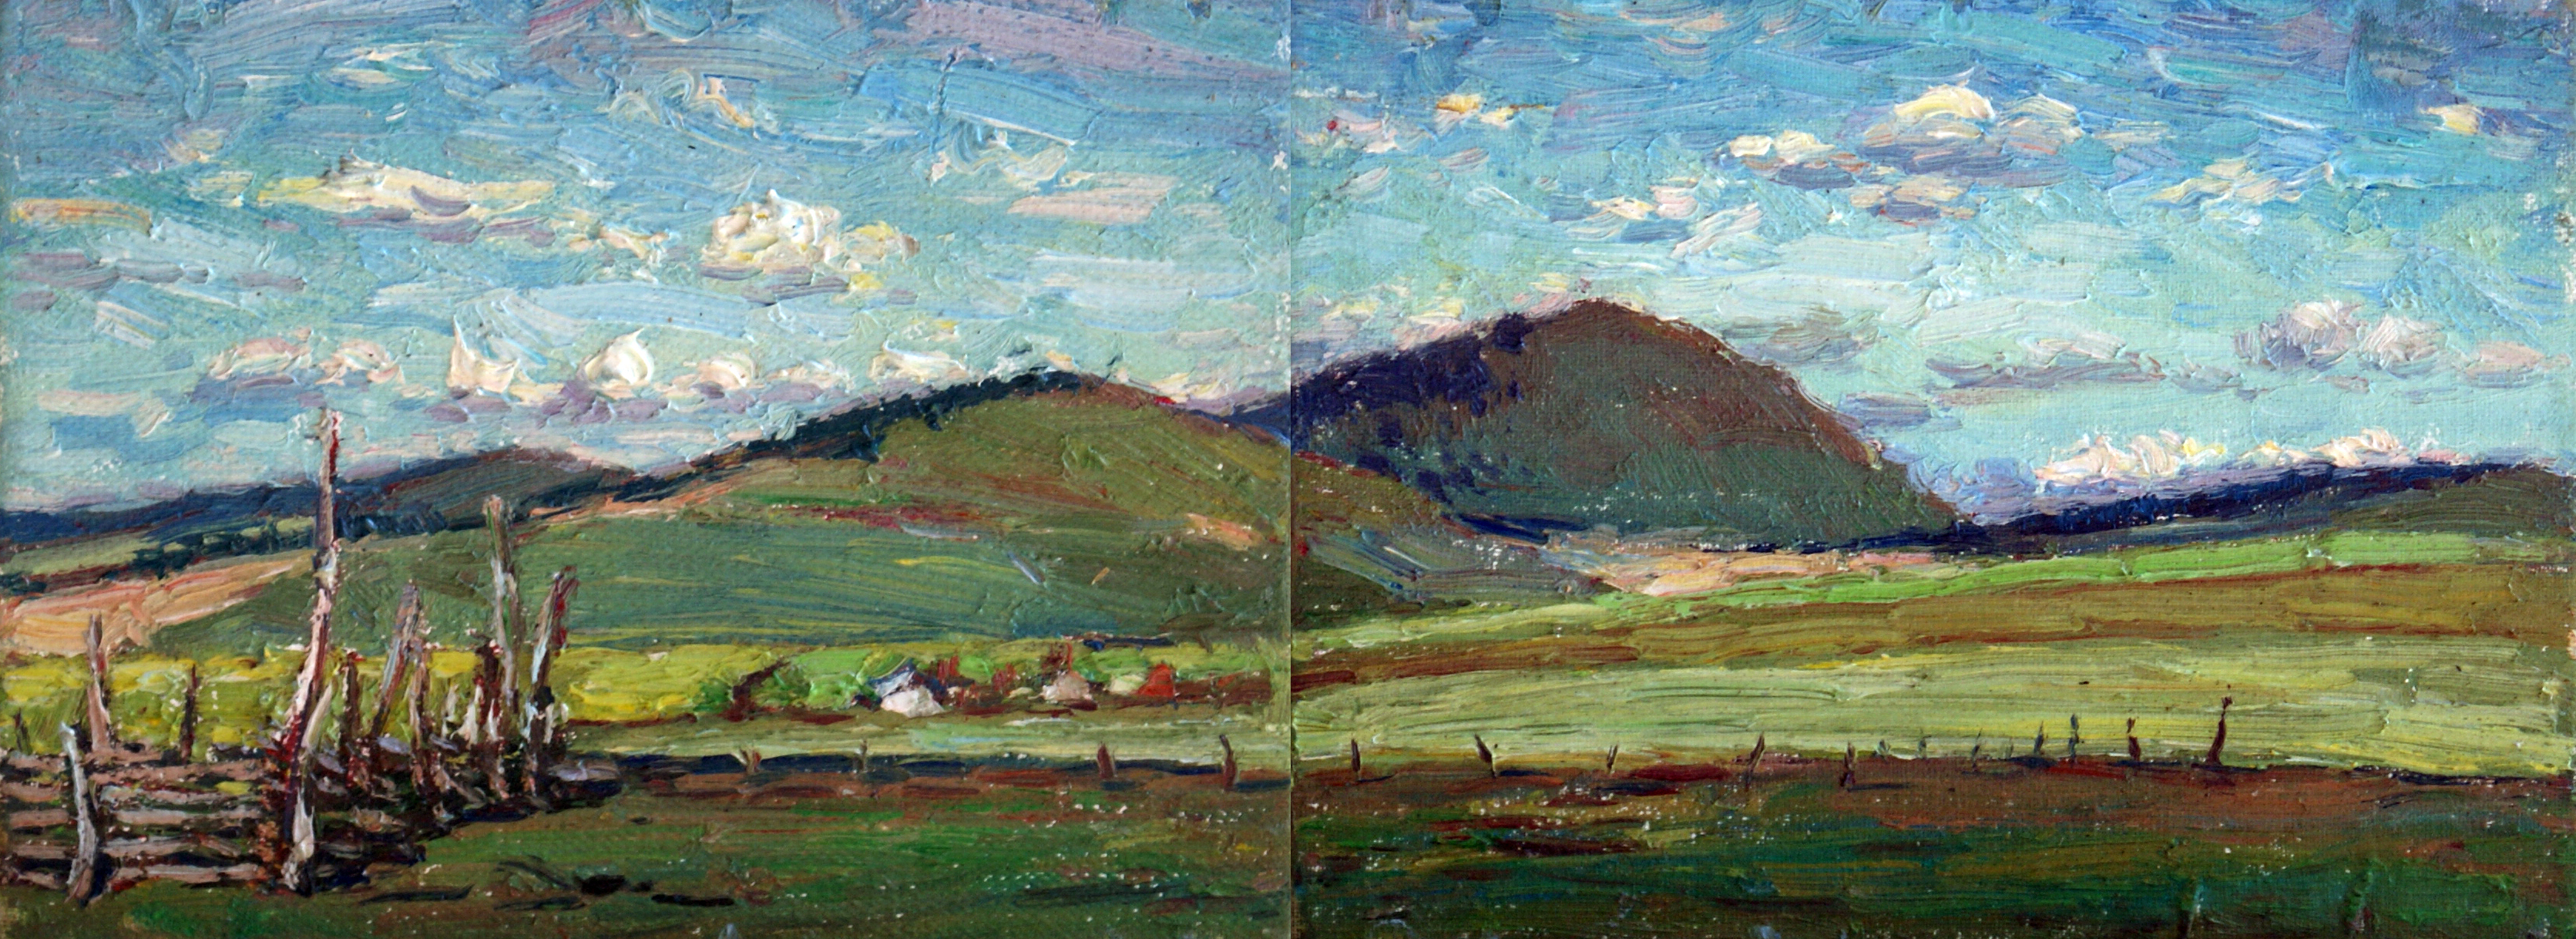 那吉草原,布面油画,2015,15x40cm,于月公